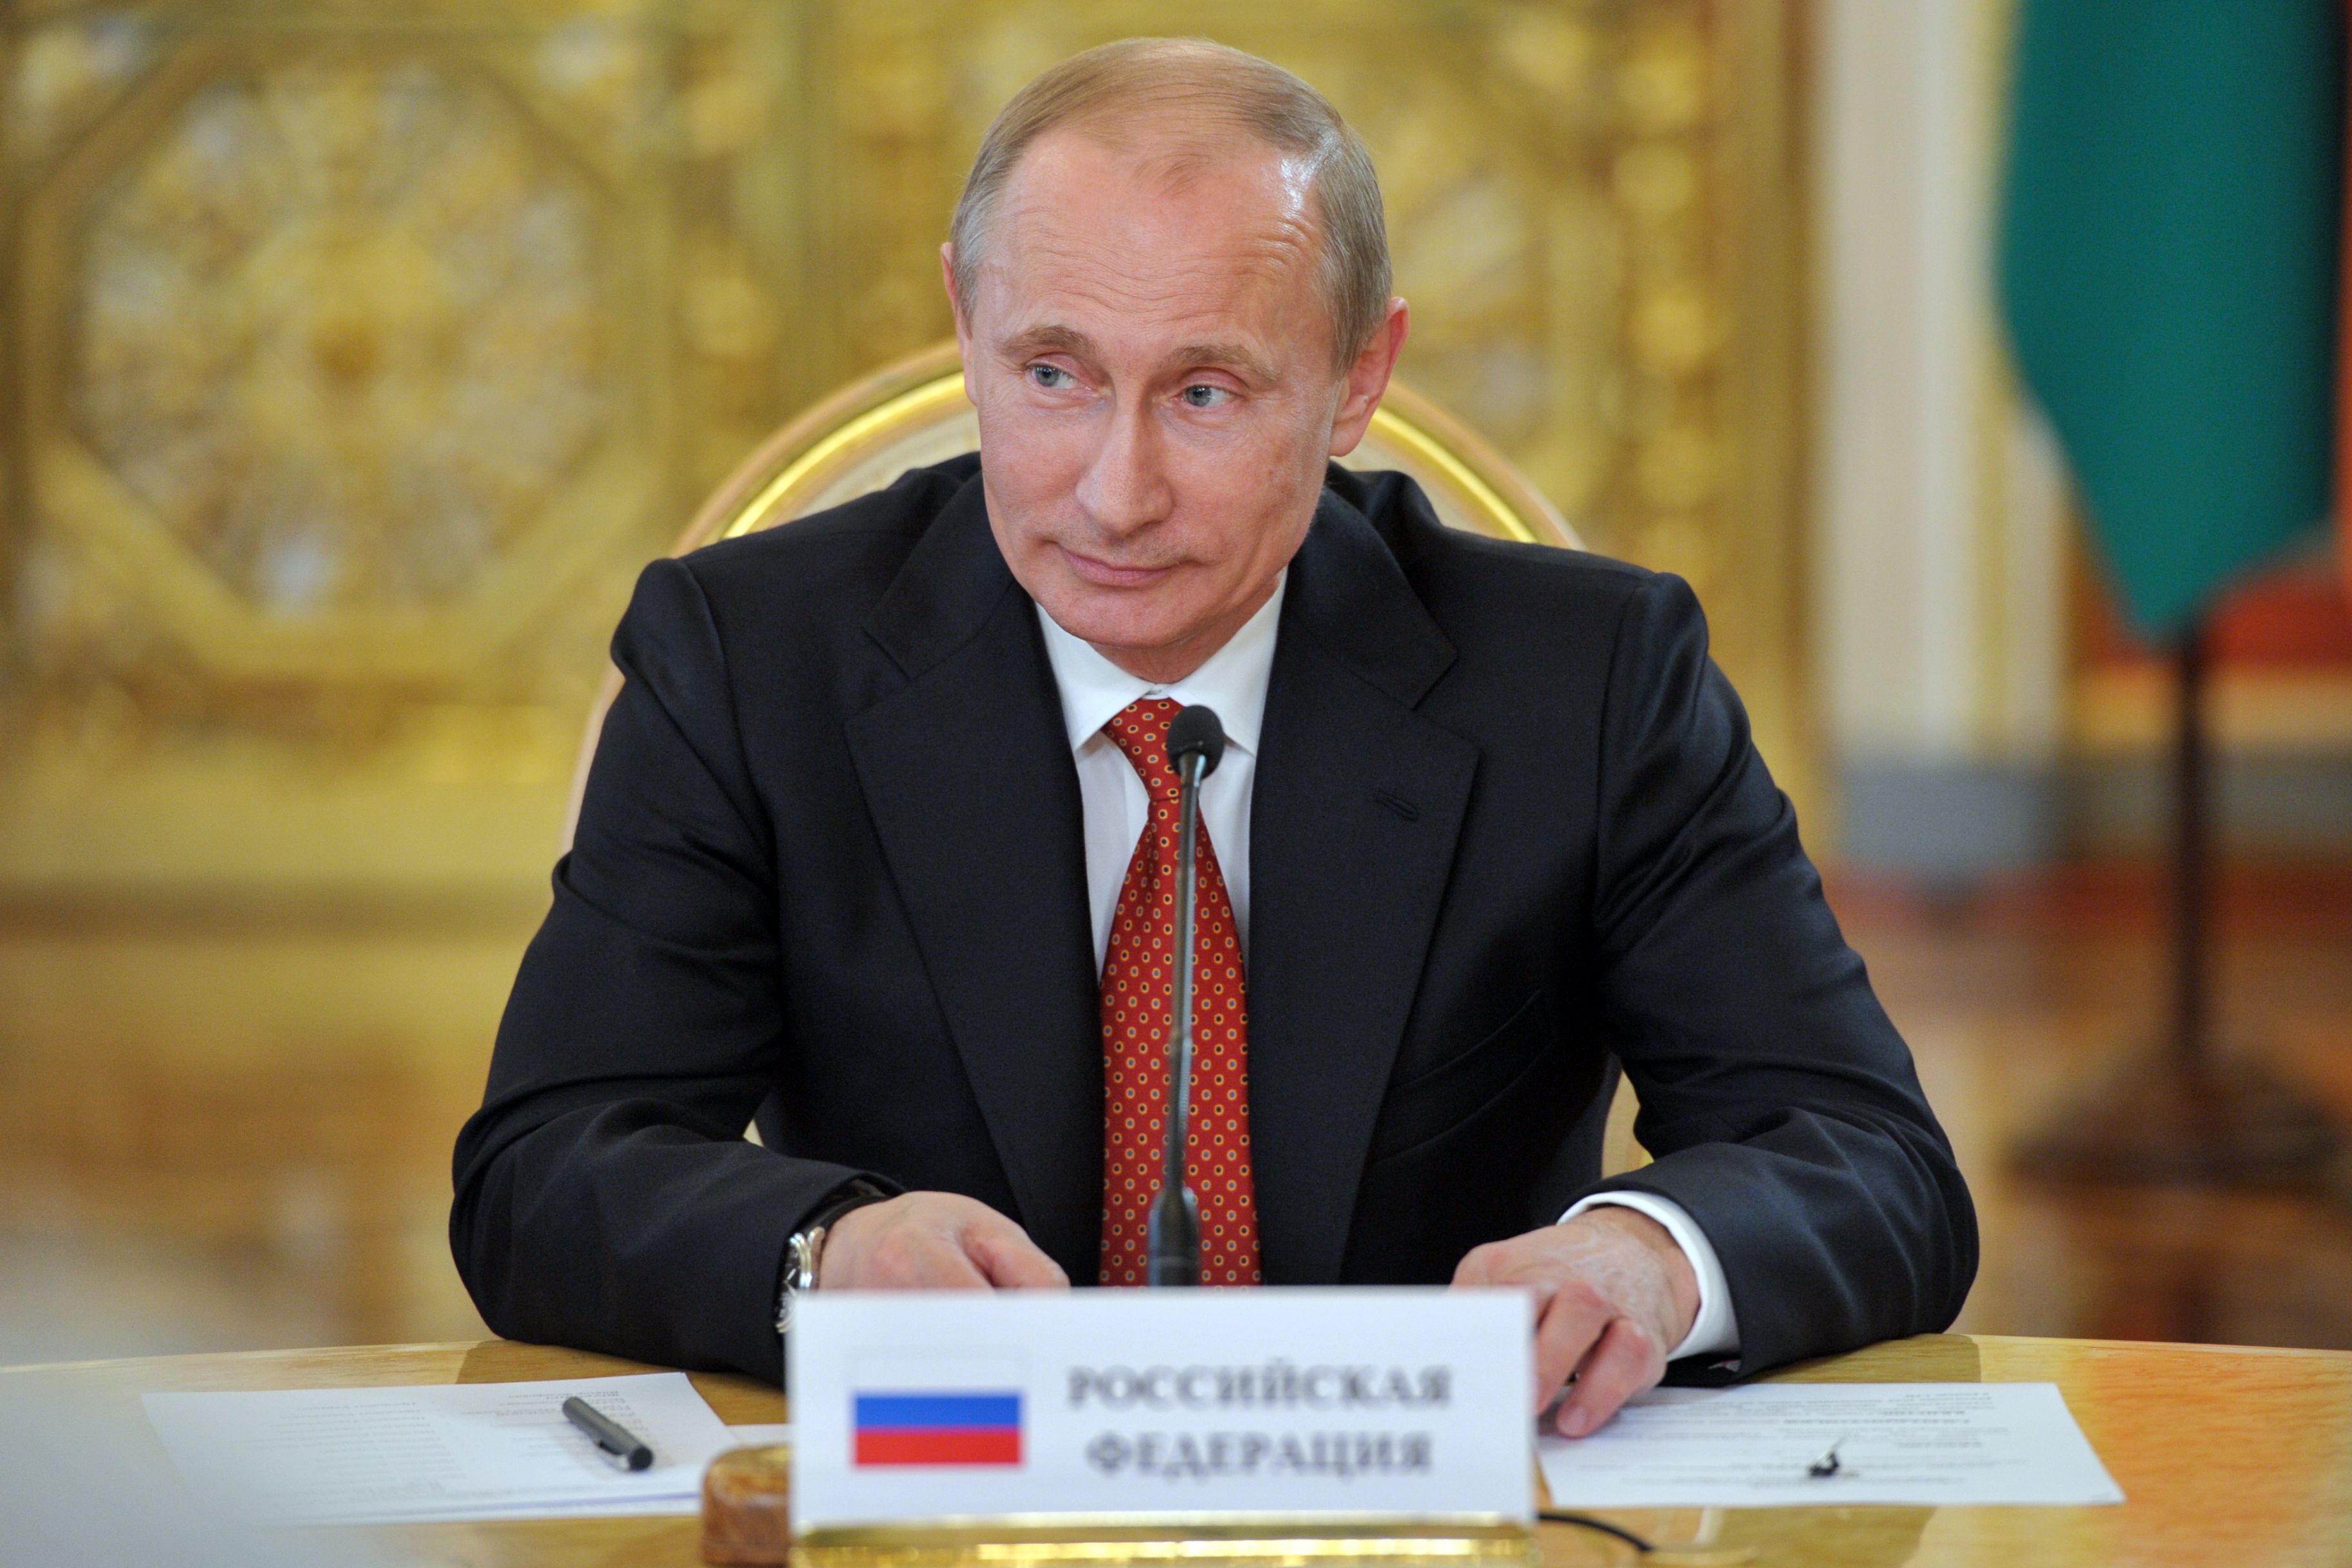 Владимир Путин выступил с обращением к россиянам о ситуации с распространением коронавируса.